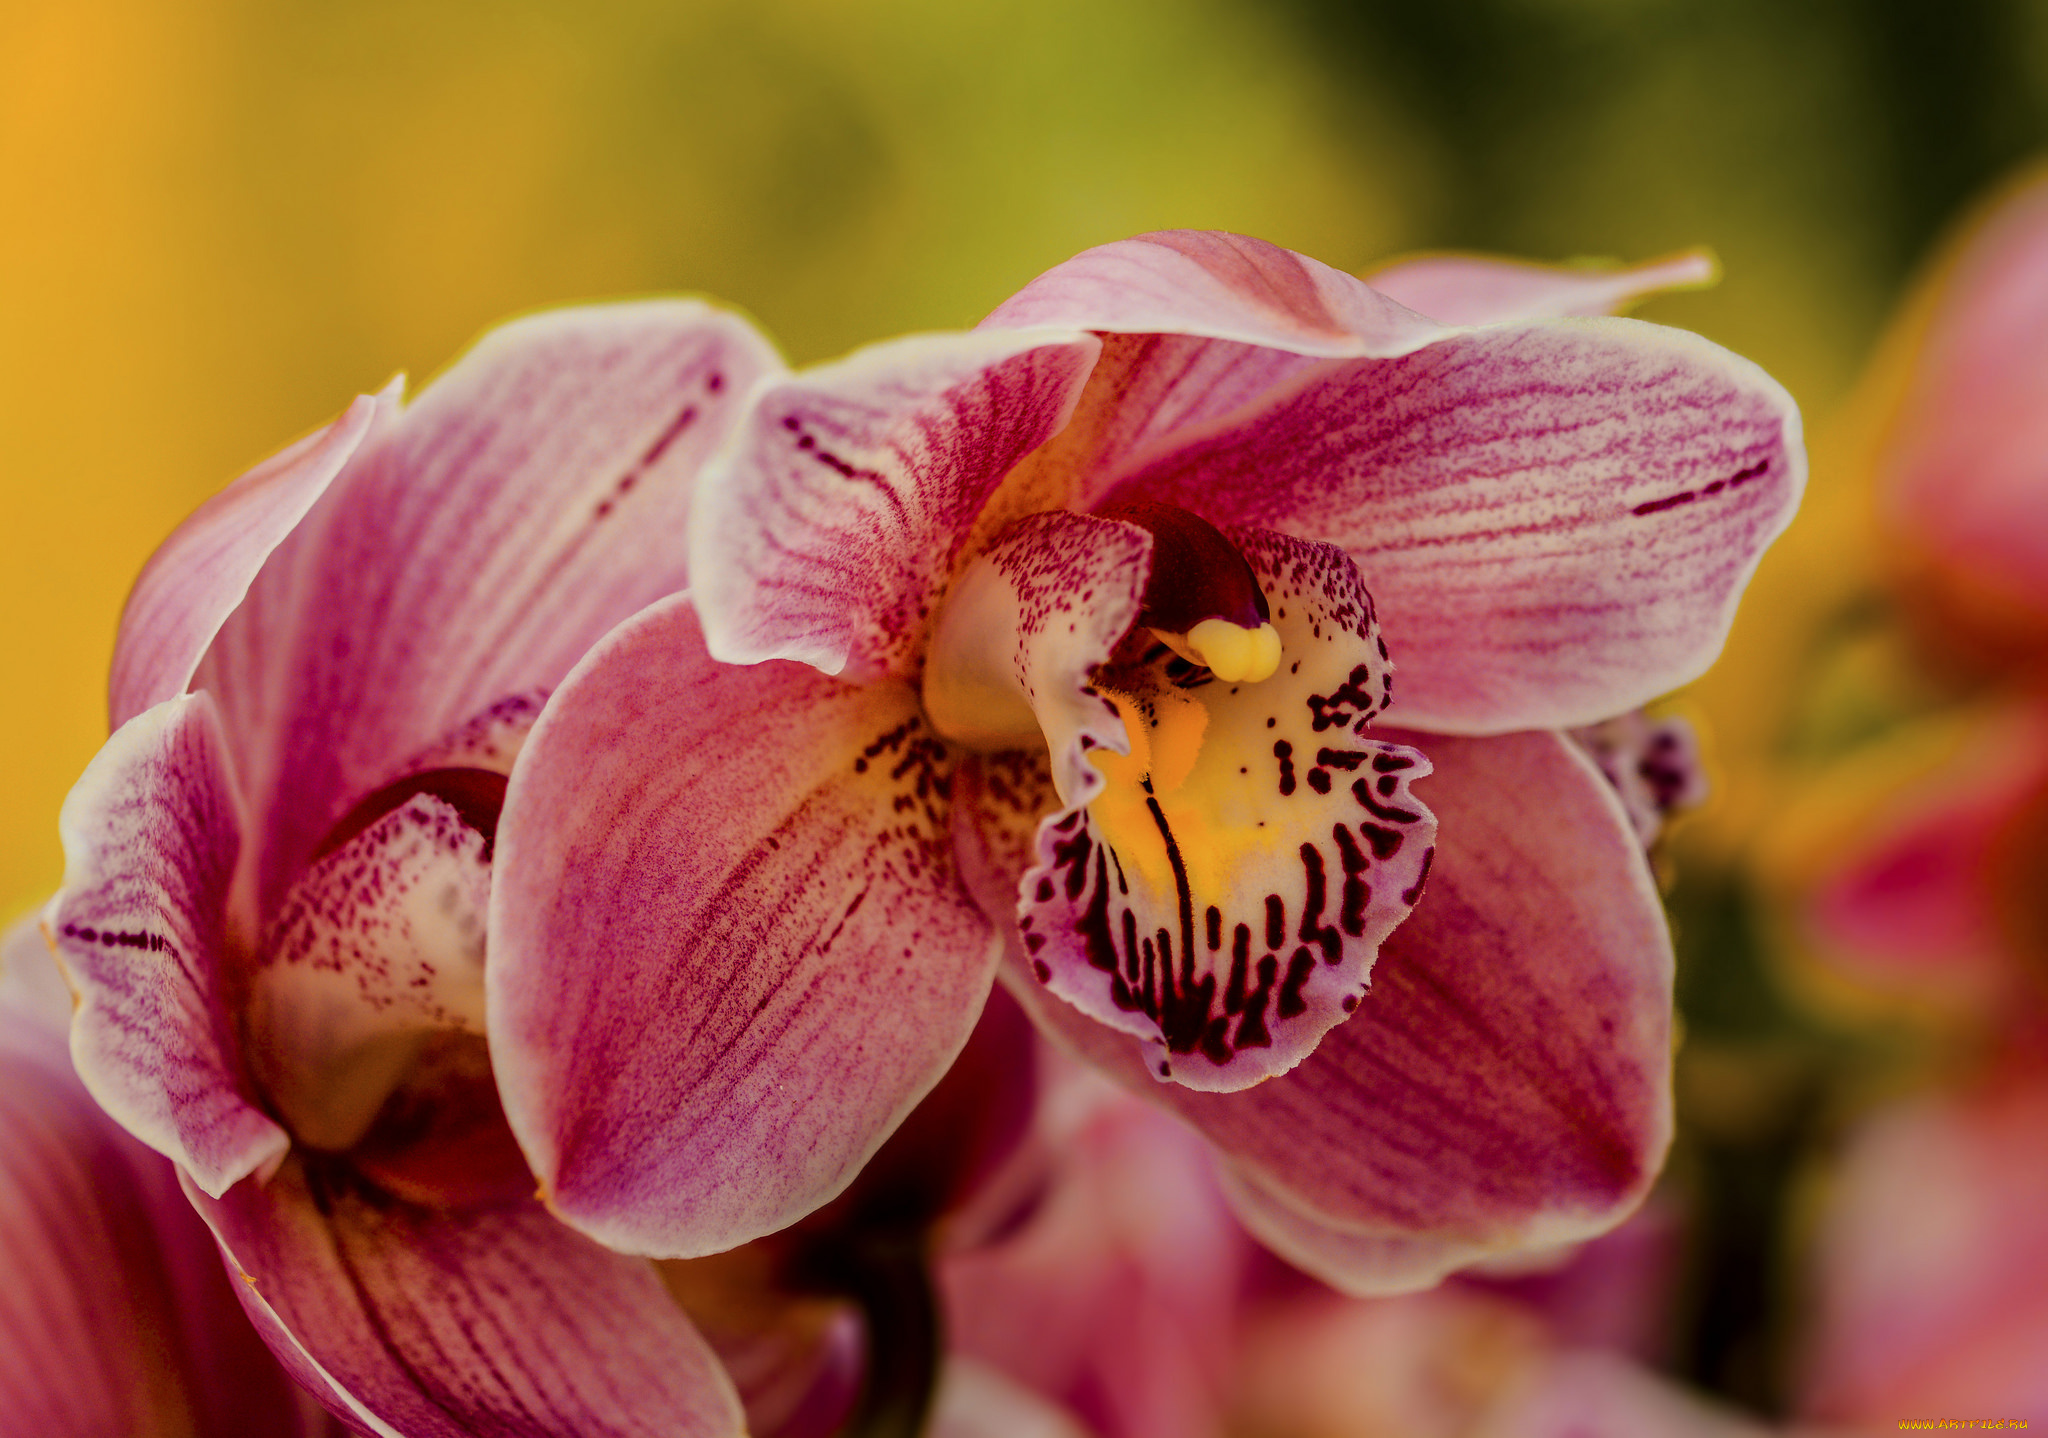 цветы, орхидеи, flowering, flowers, orchids, цветение